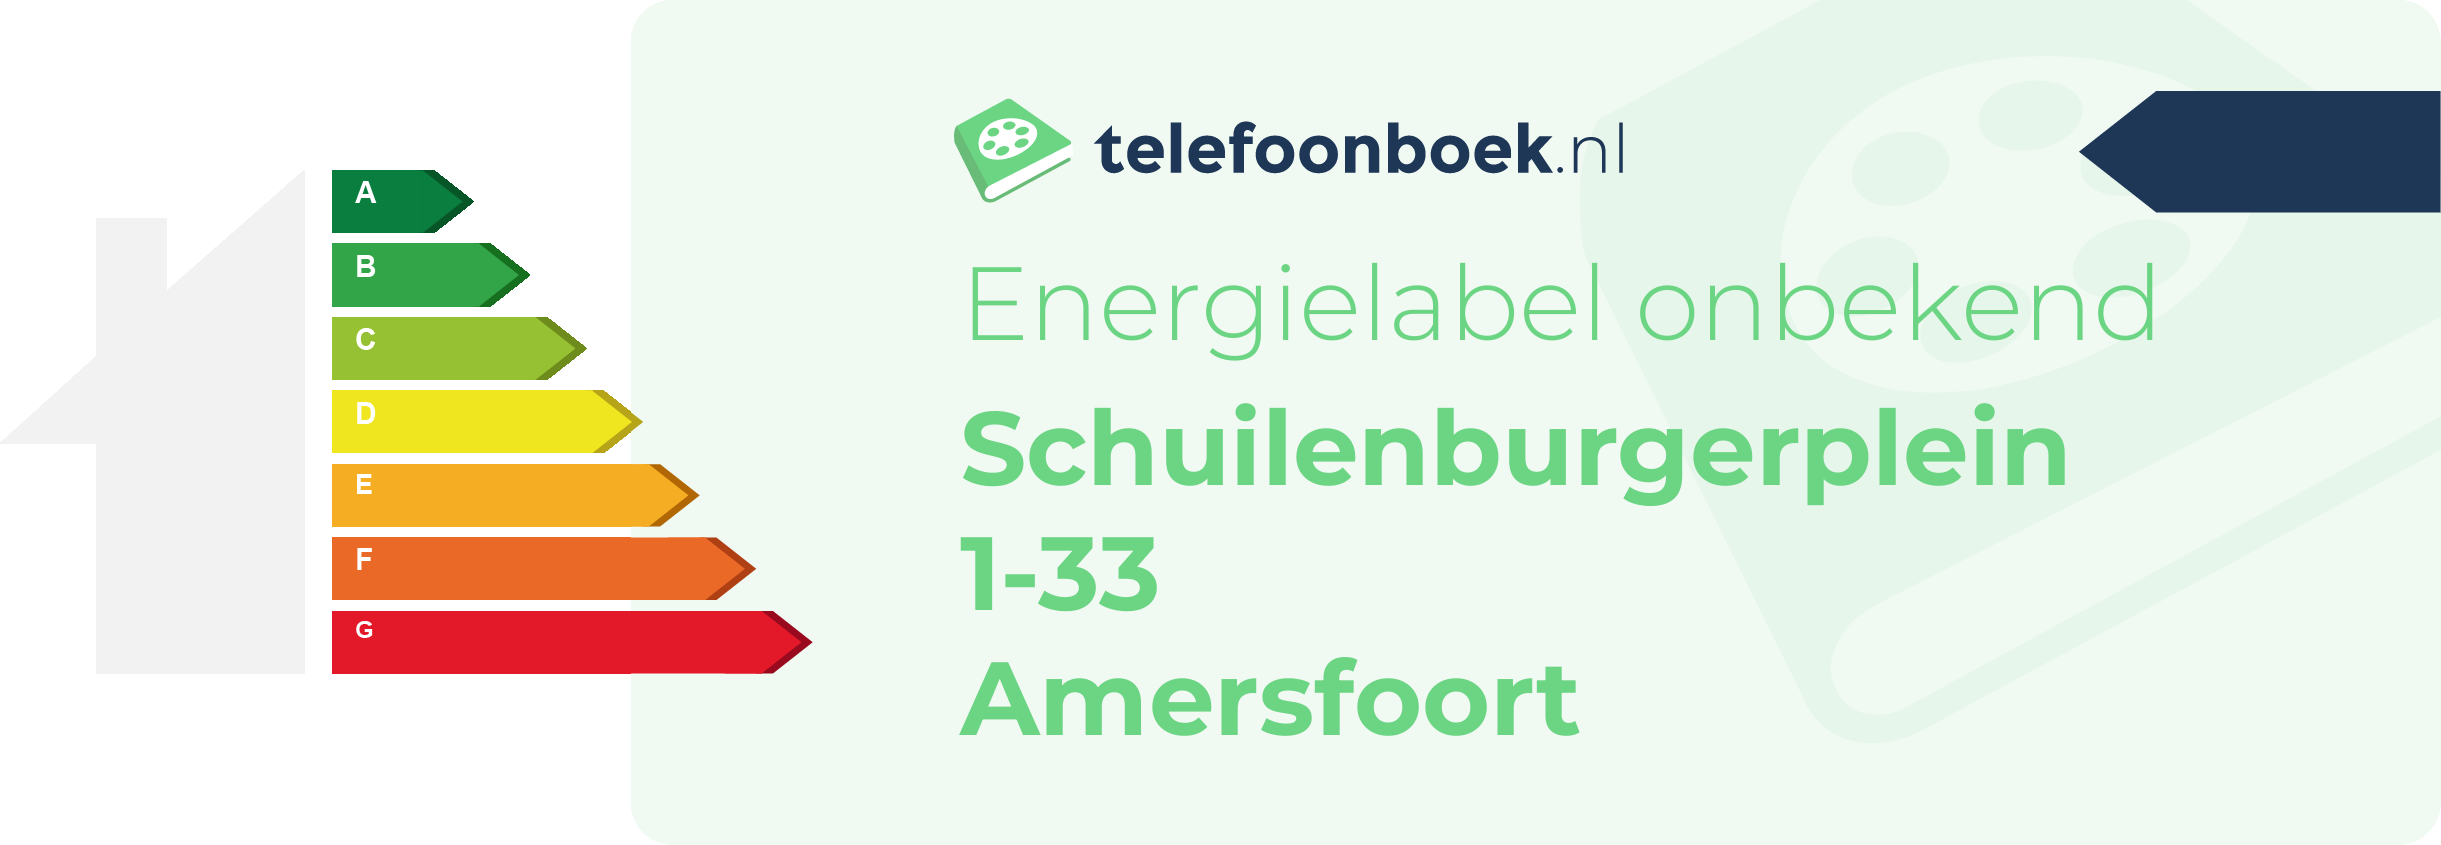 Energielabel Schuilenburgerplein 1-33 Amersfoort